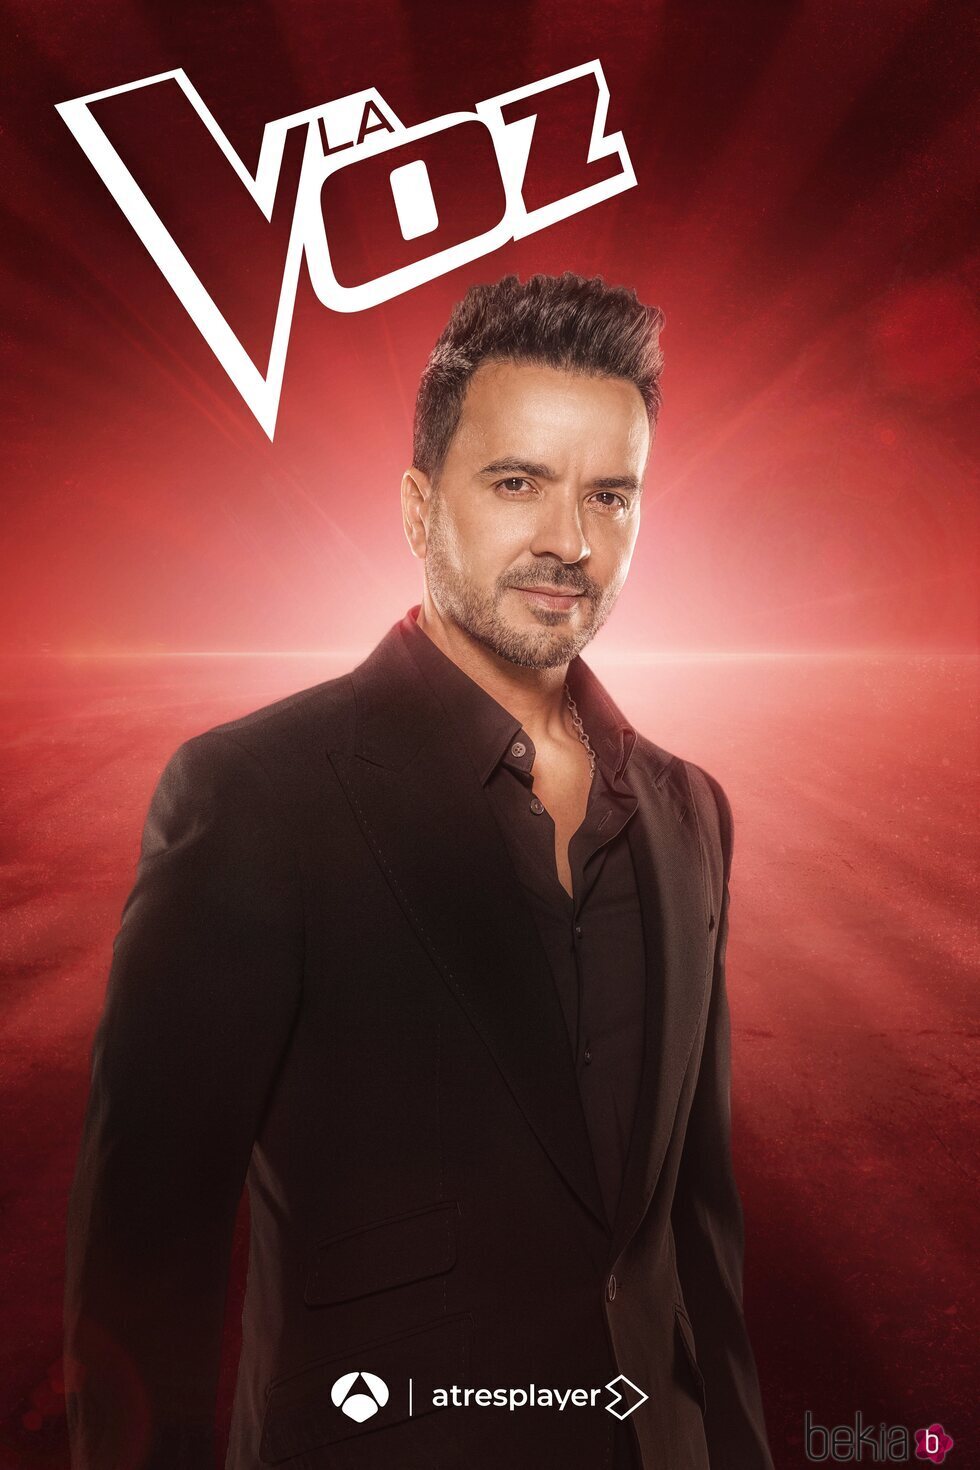 Póster promocional de Luis Fonsi para la quinta edición de 'La Voz' en Antena 3